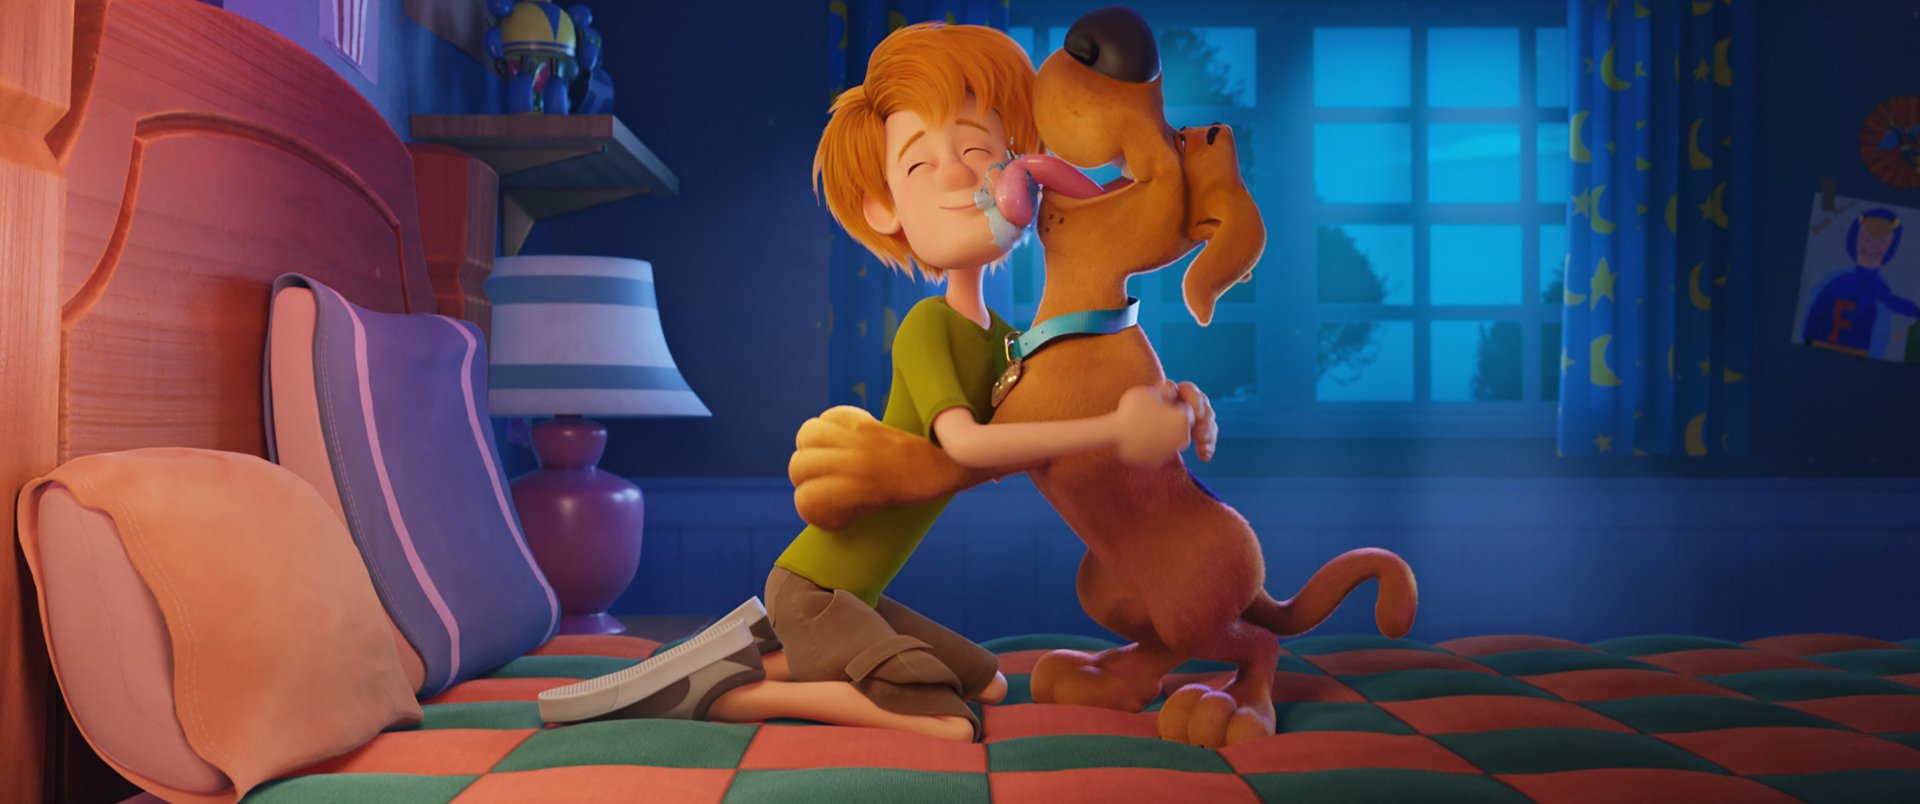 Exclusivo: ‘Scooby! O Filme’ será lançado direto no streaming no Brasil